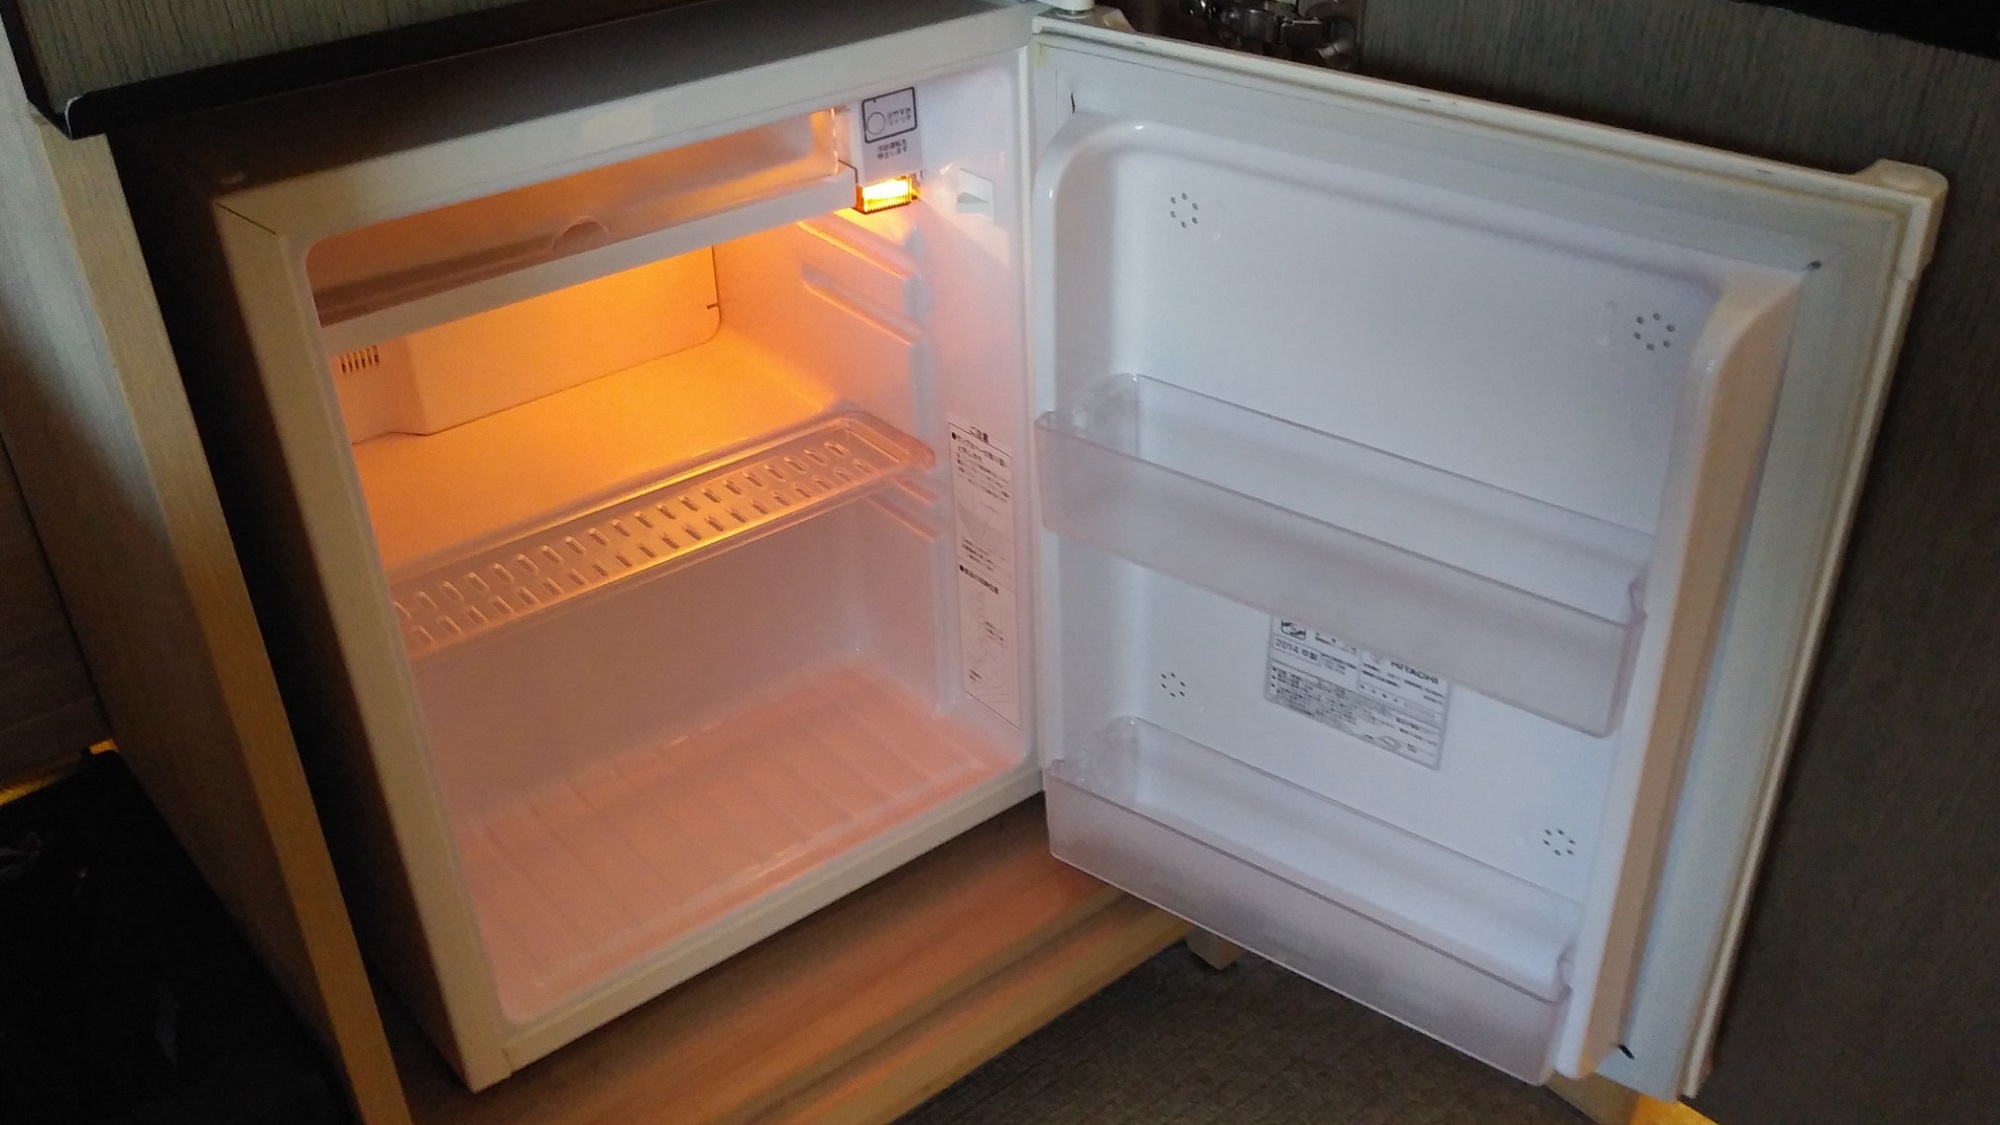 現在、感染防止に向けた取り組みの一環として、冷蔵庫内商品を撤去しております